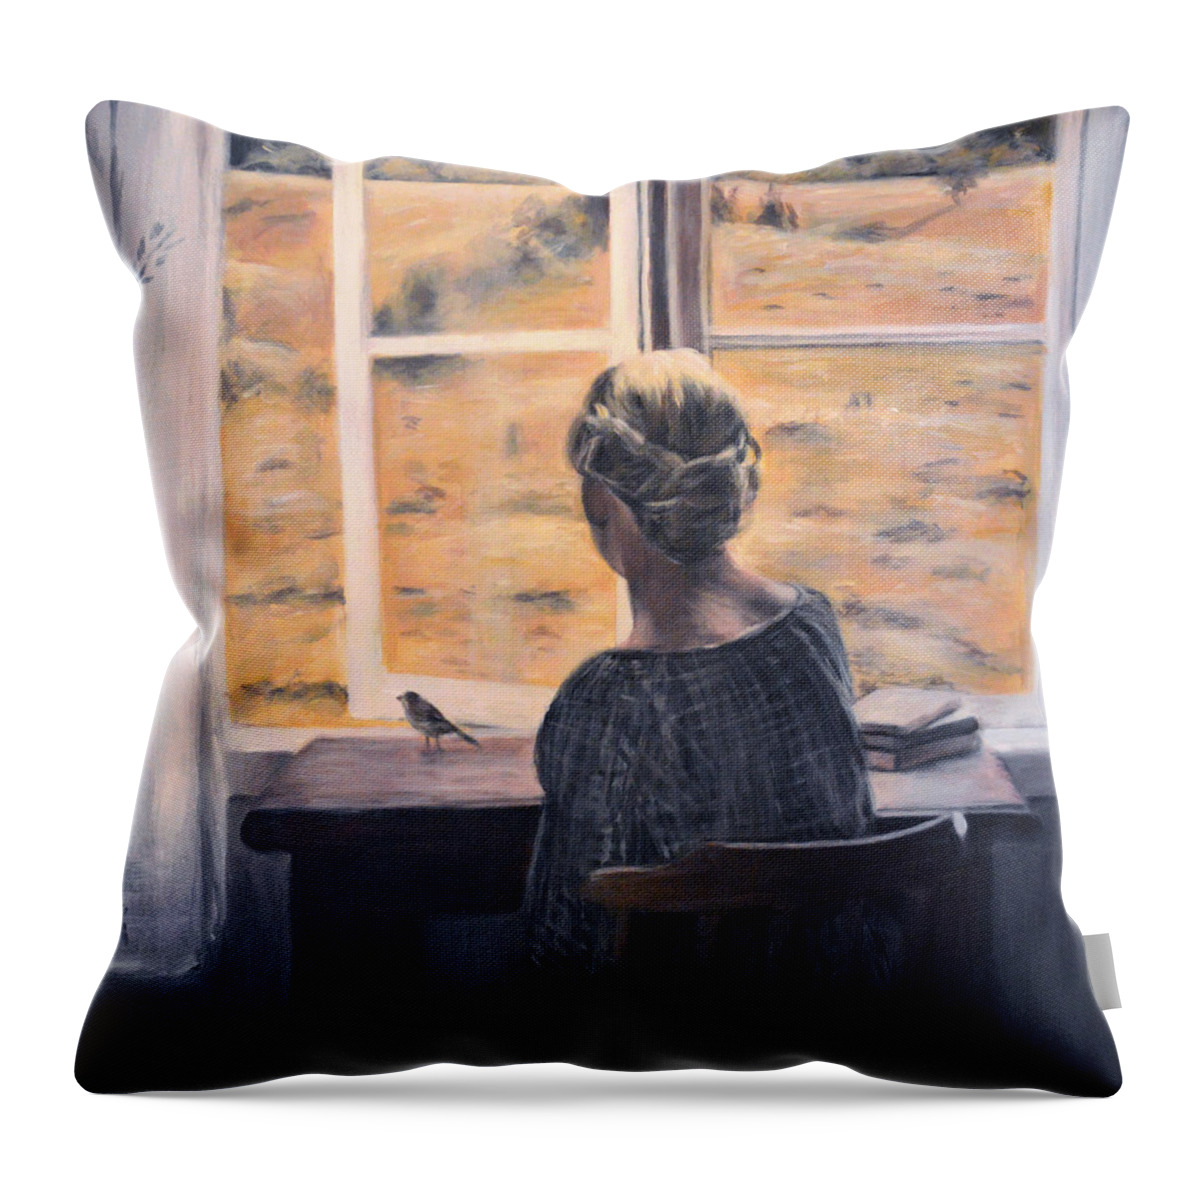 Woman Throw Pillow featuring the painting Serenita by Escha Van den bogerd